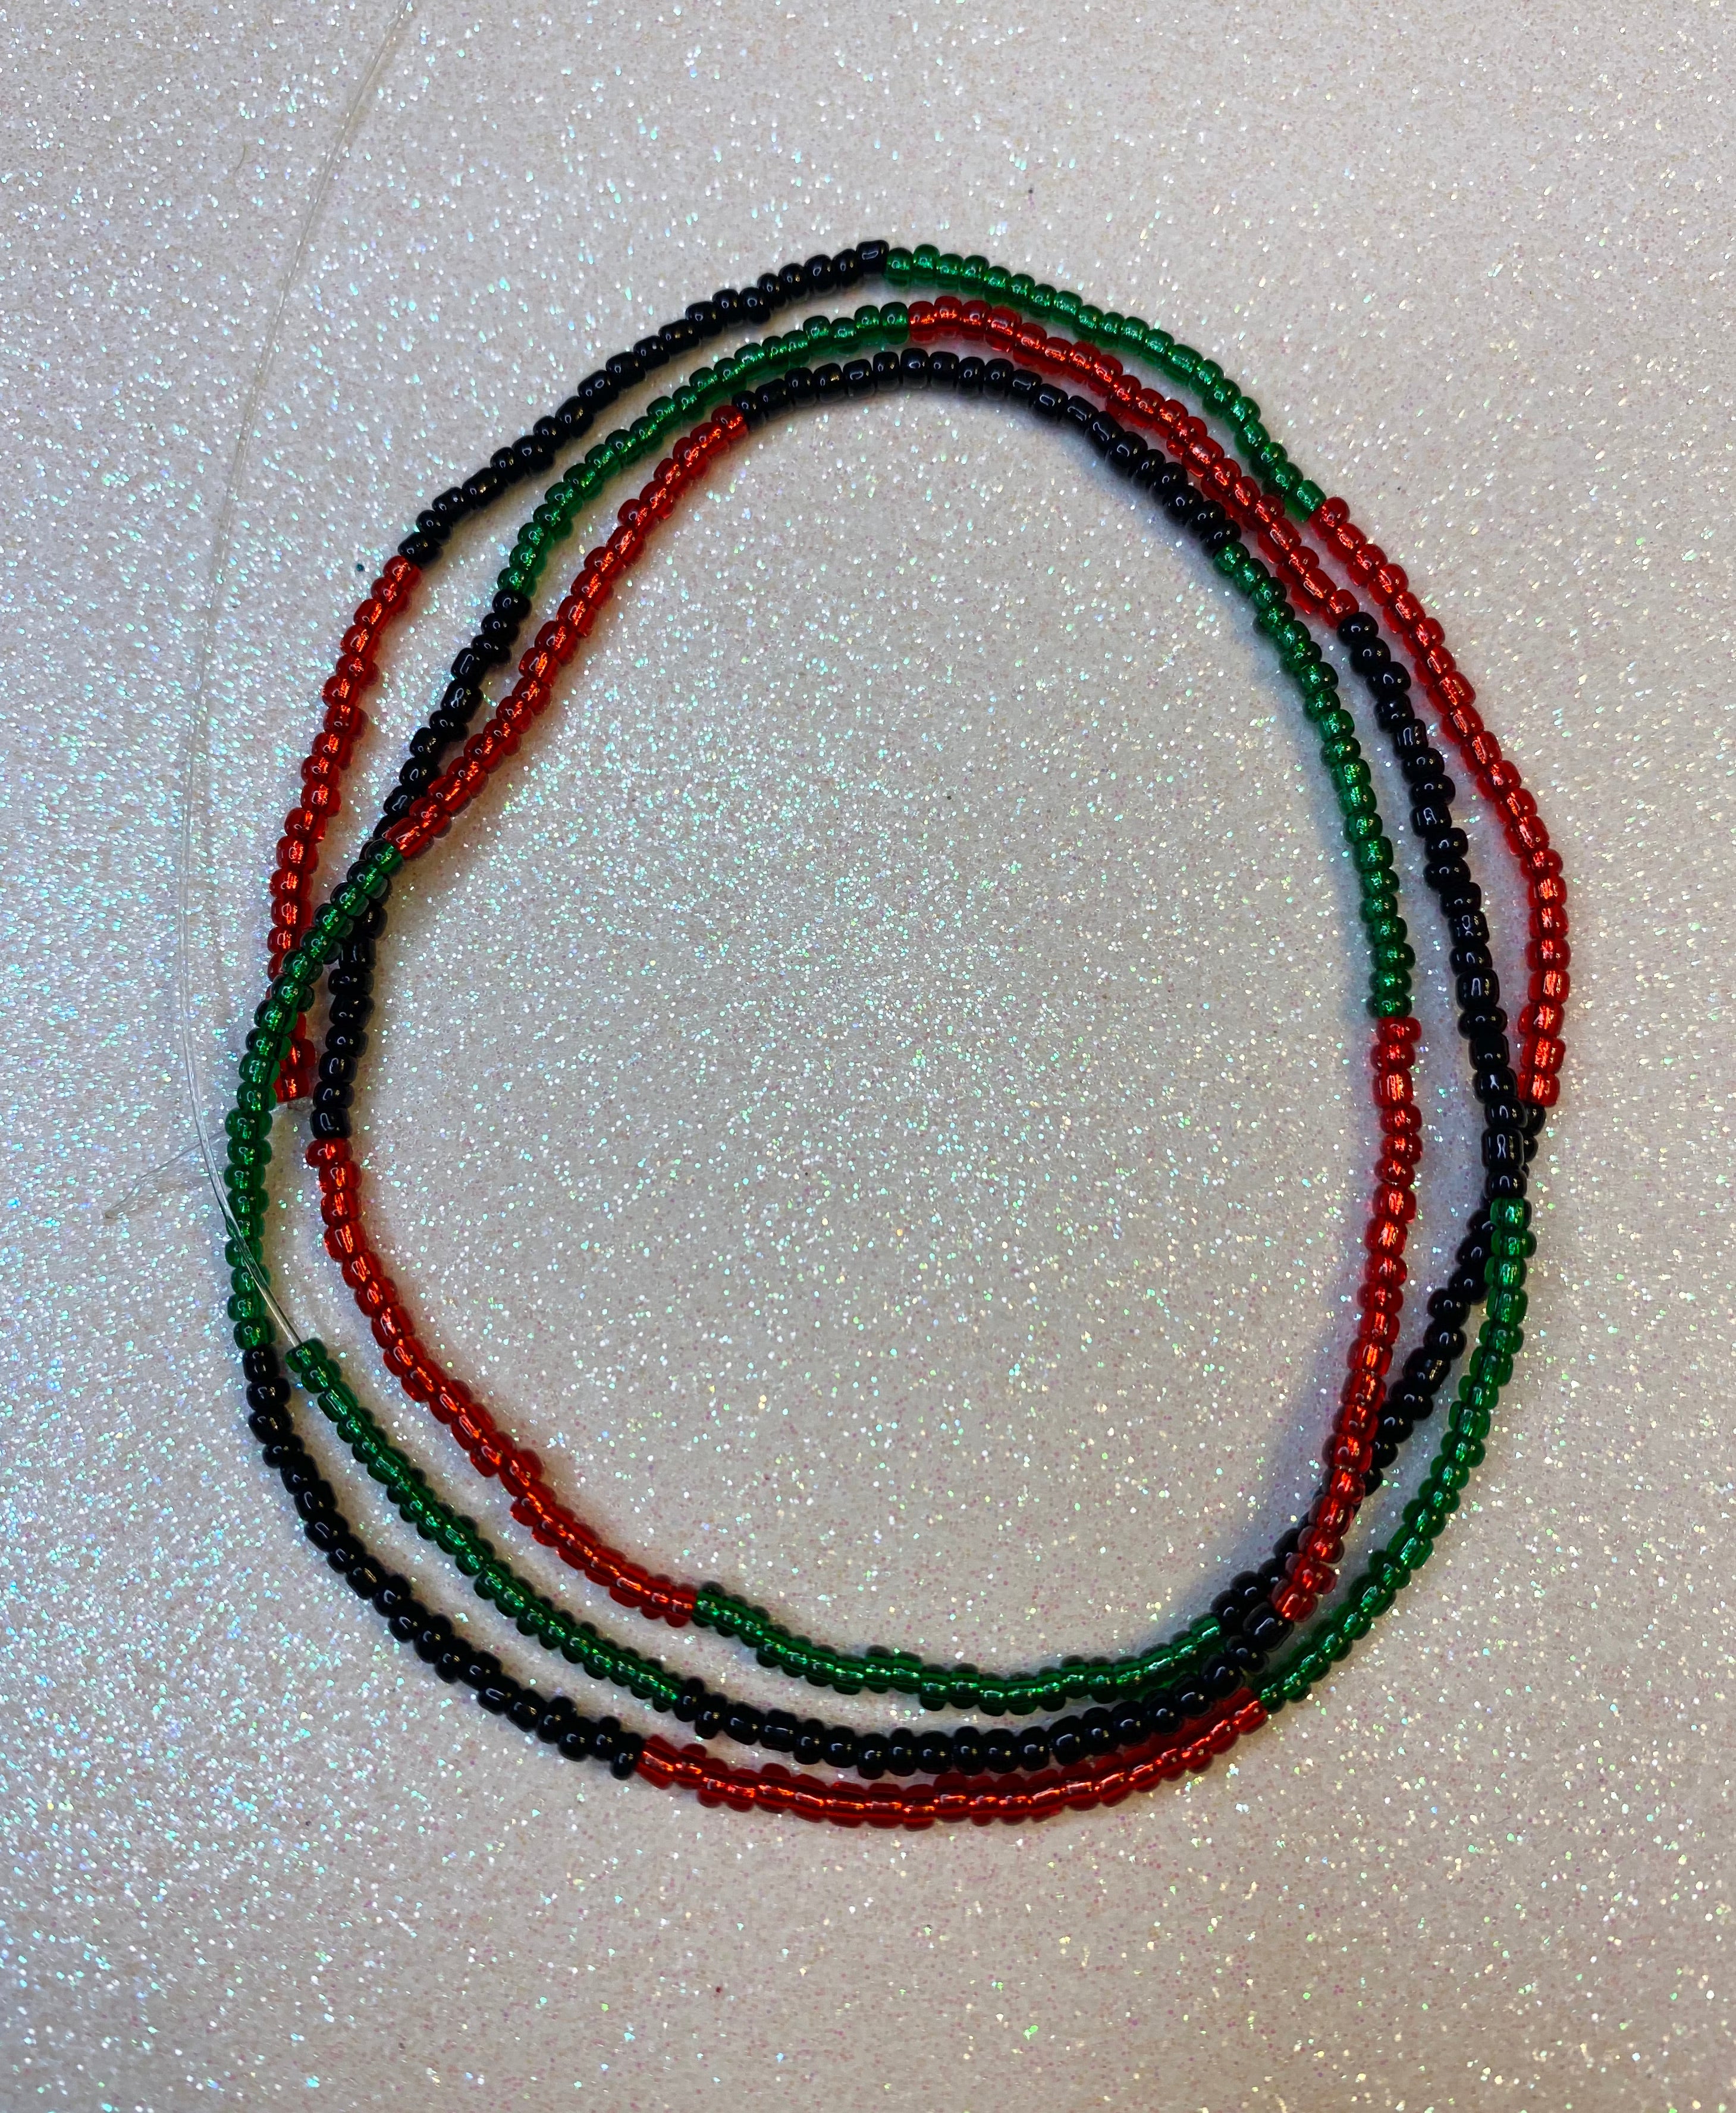 Pan-African Waist Beads